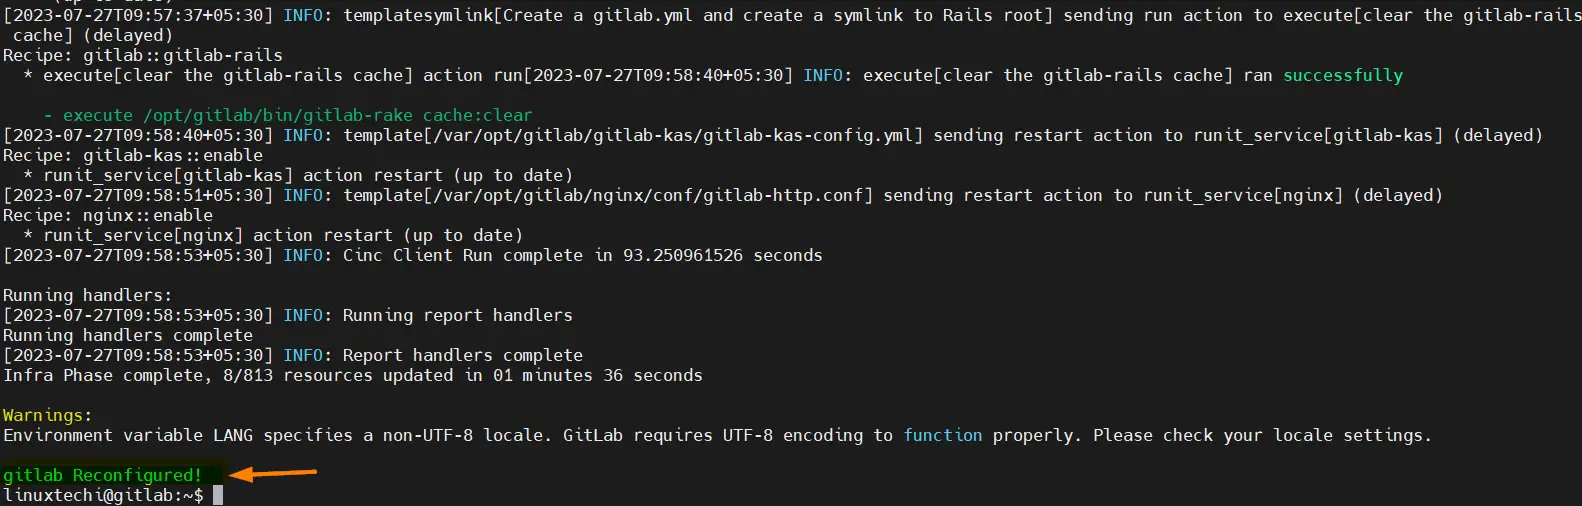 Gitlab-reconfigured-Ubuntu